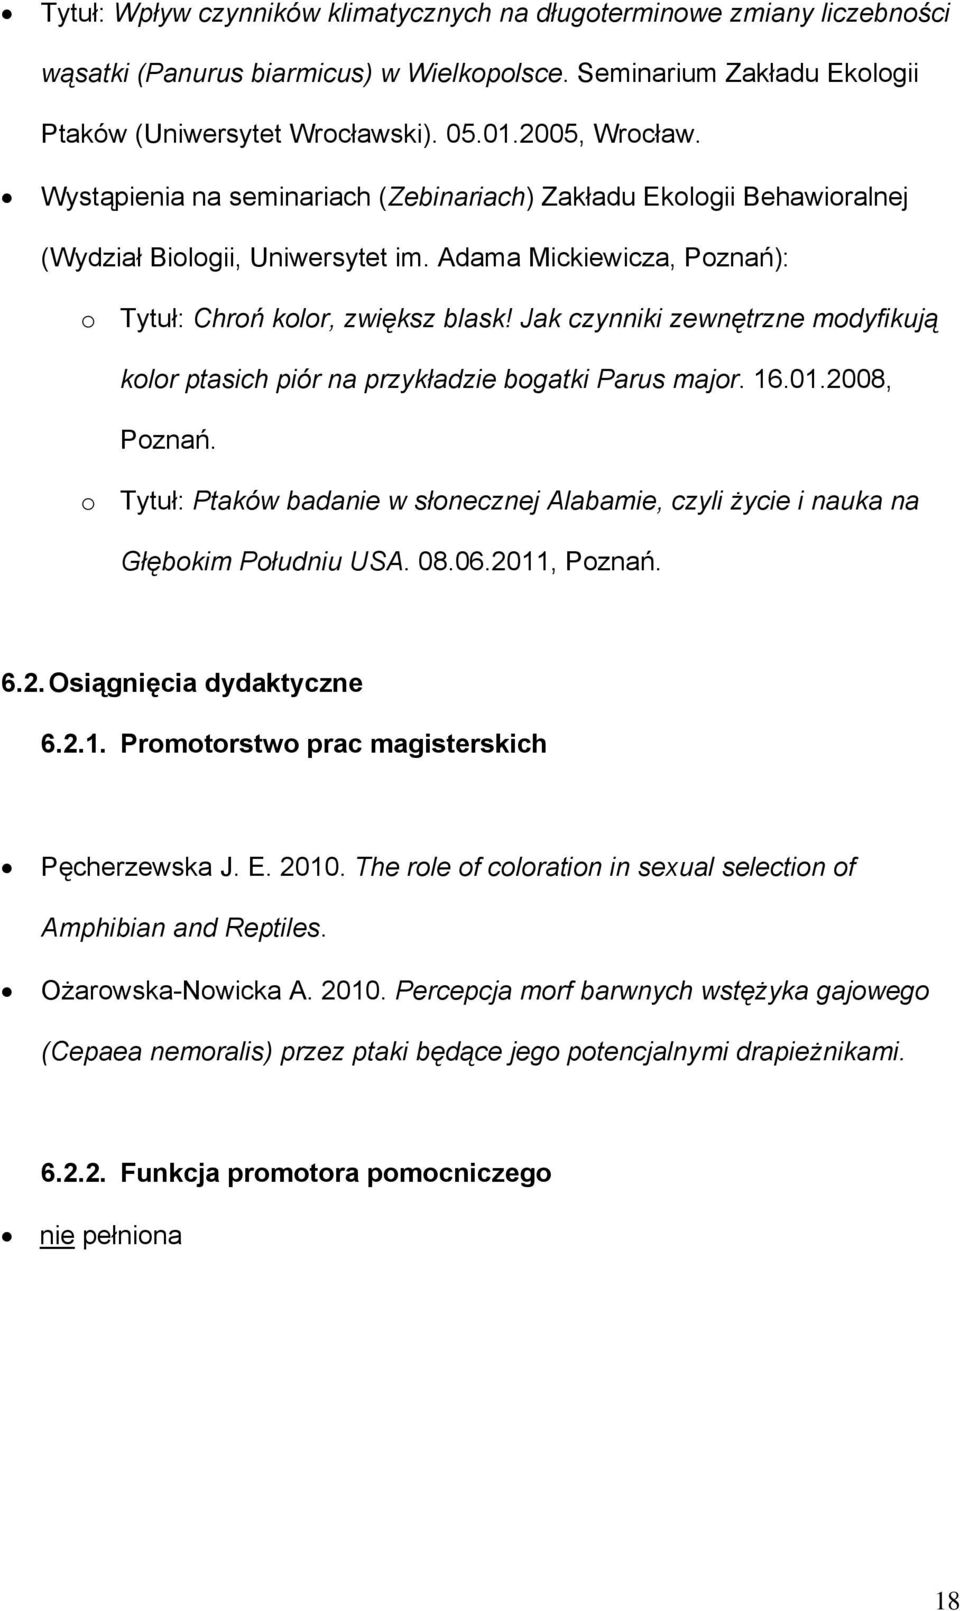 Jak czynniki zewnętrzne modyfikują kolor ptasich piór na przykładzie bogatki Parus major. 16.01.2008, Poznań.